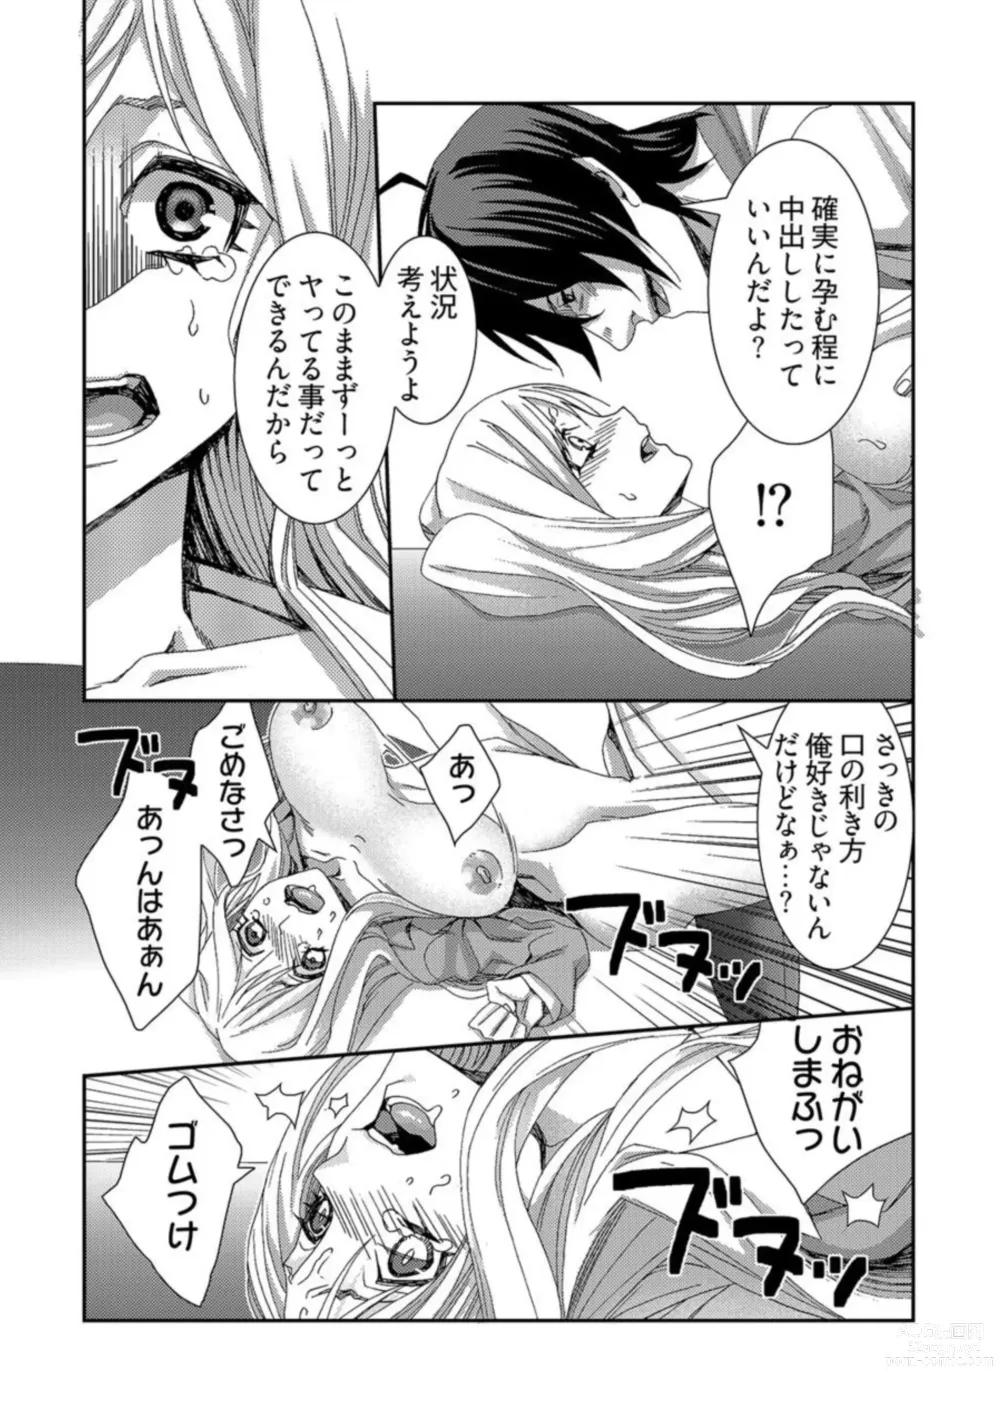 Page 21 of manga Jikan o Ayatsuri Mukyoka Tanetsuke - Shojo kara Ninshin made Mugen Loop Vol. 2